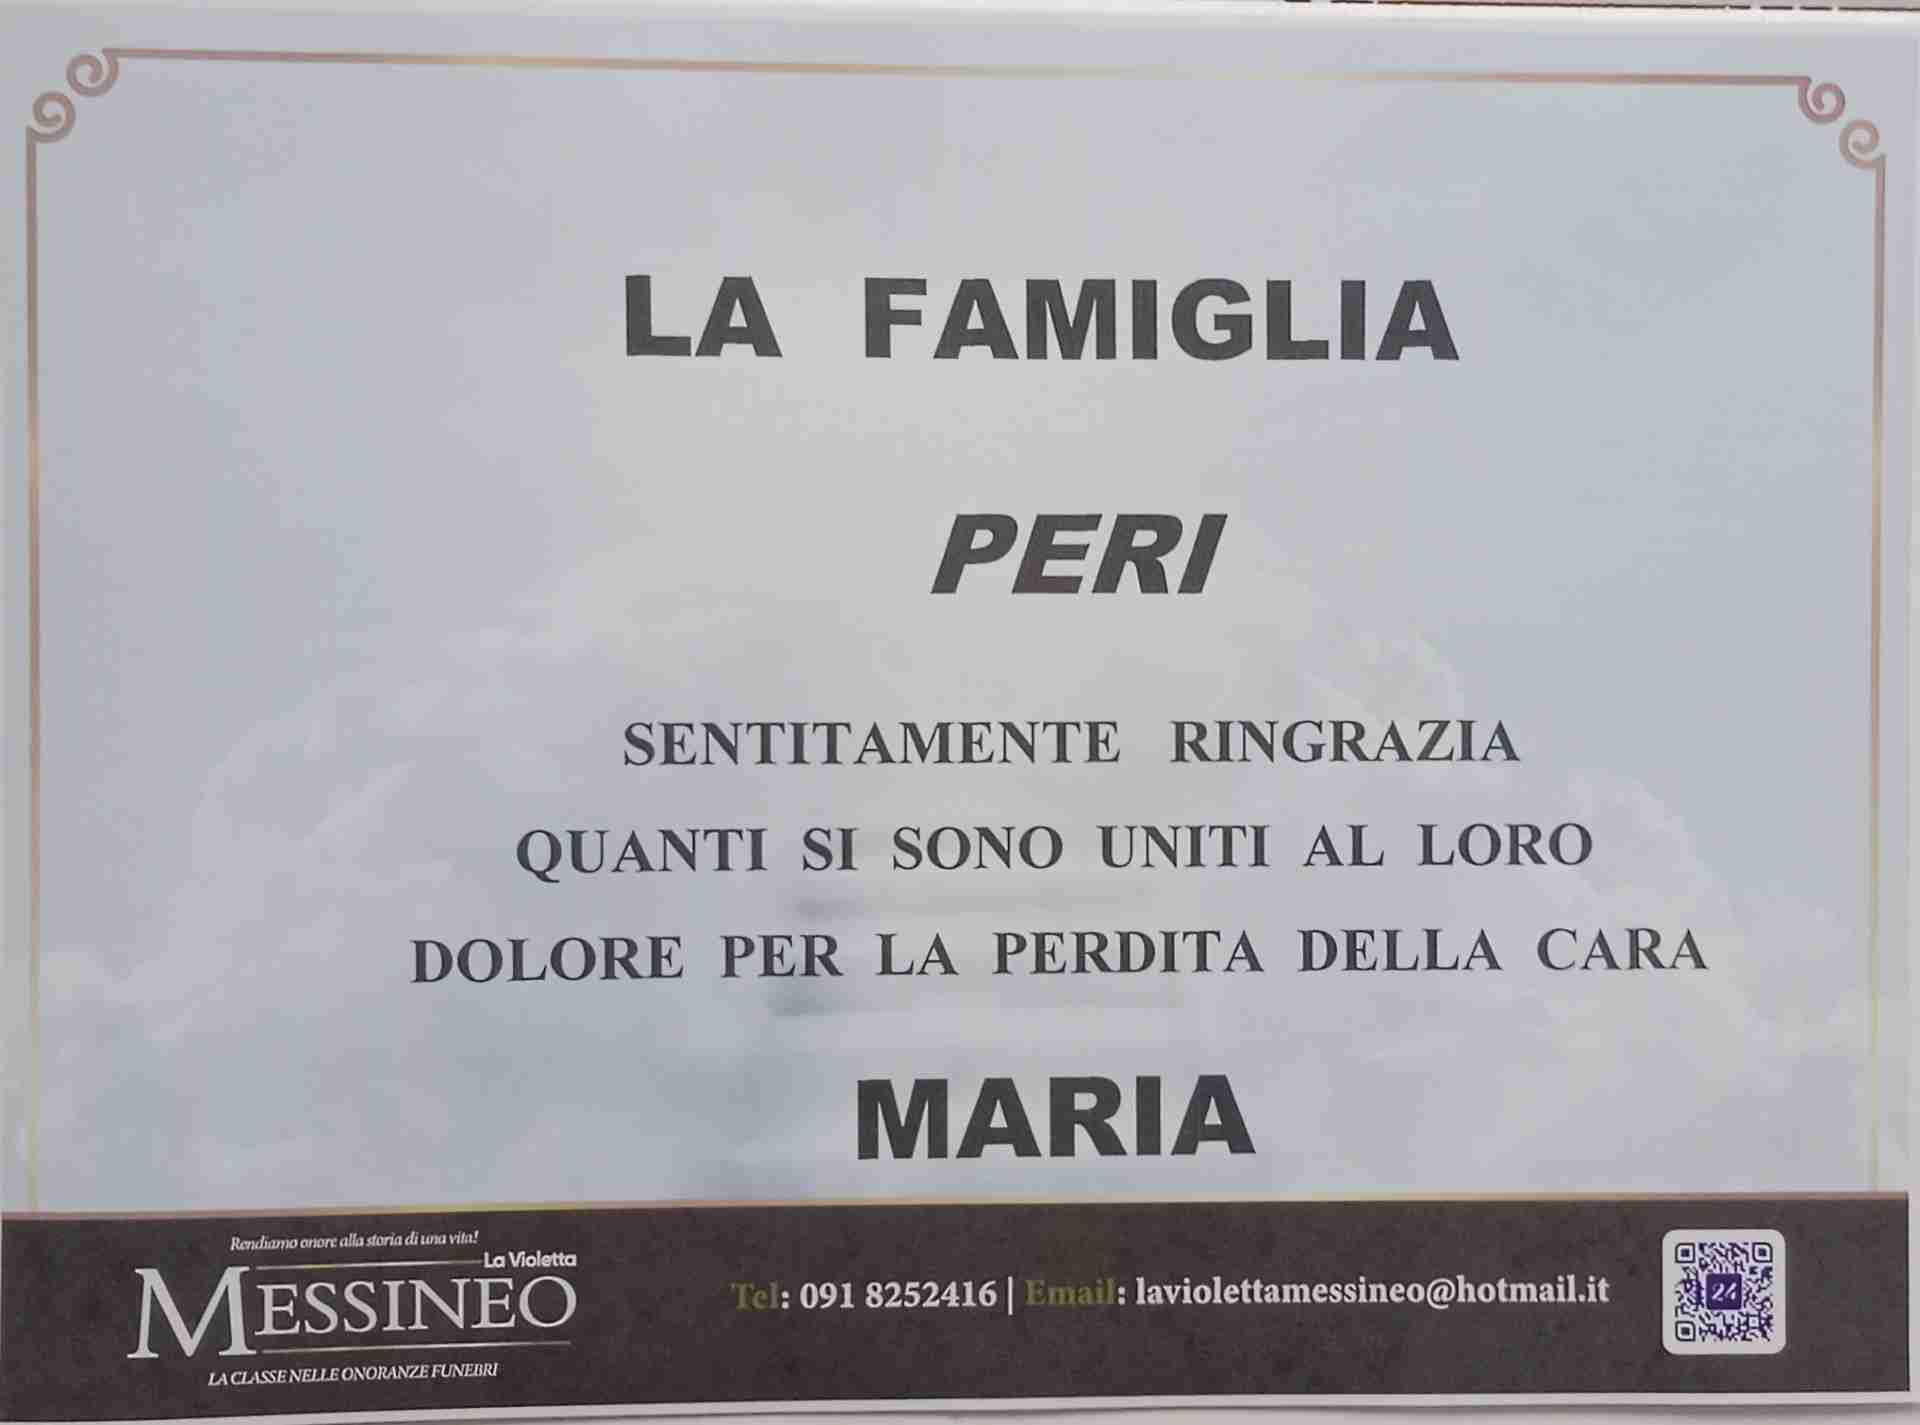 Maria Di Domenico